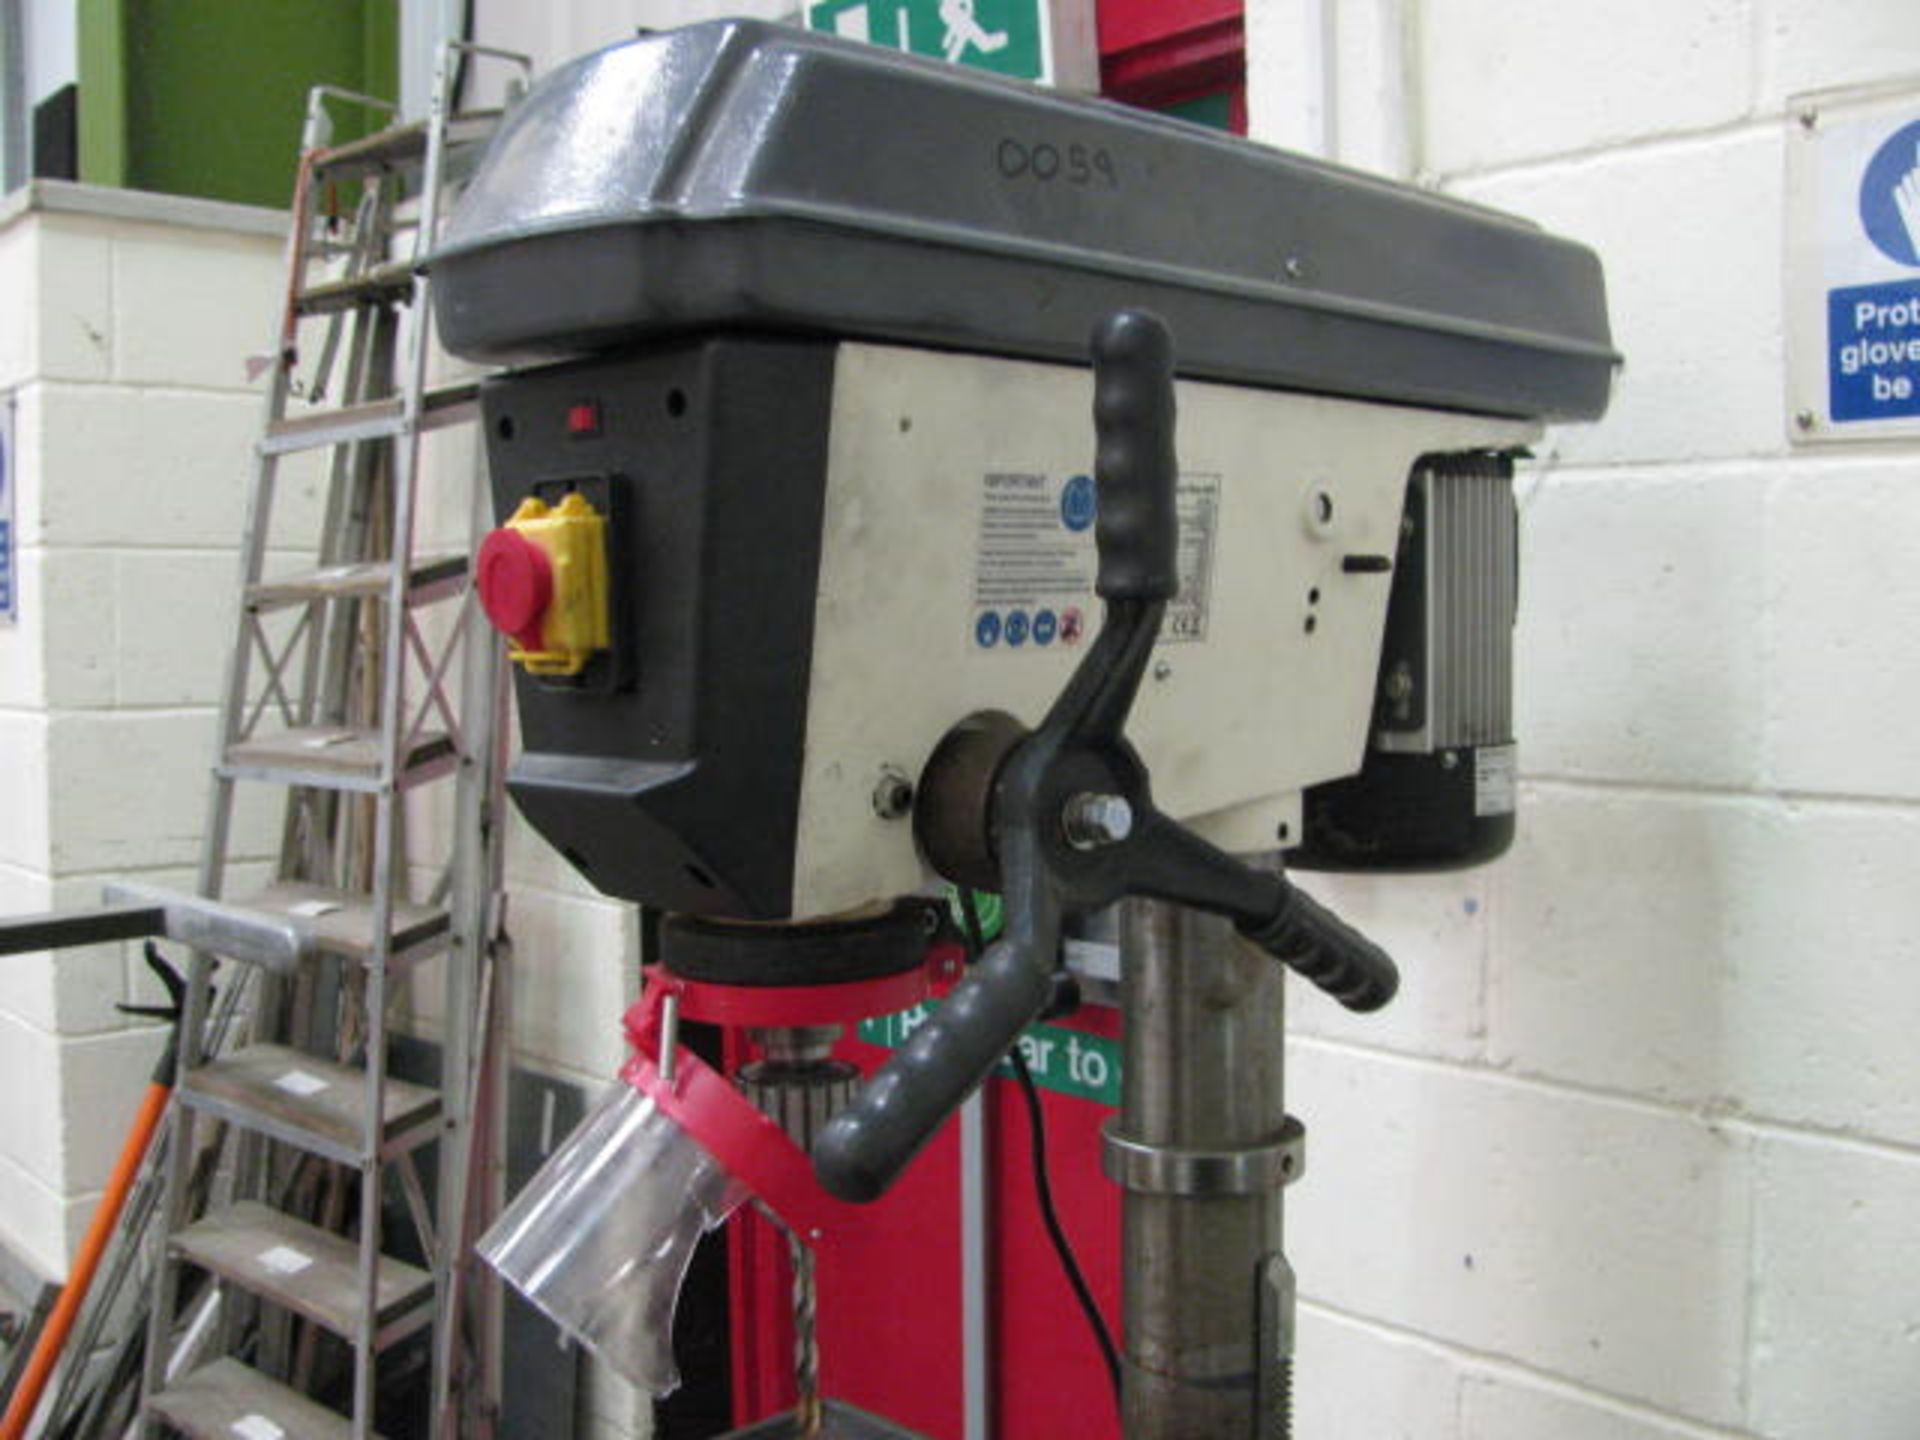 Axminster floor standing pillar drill - Image 2 of 3